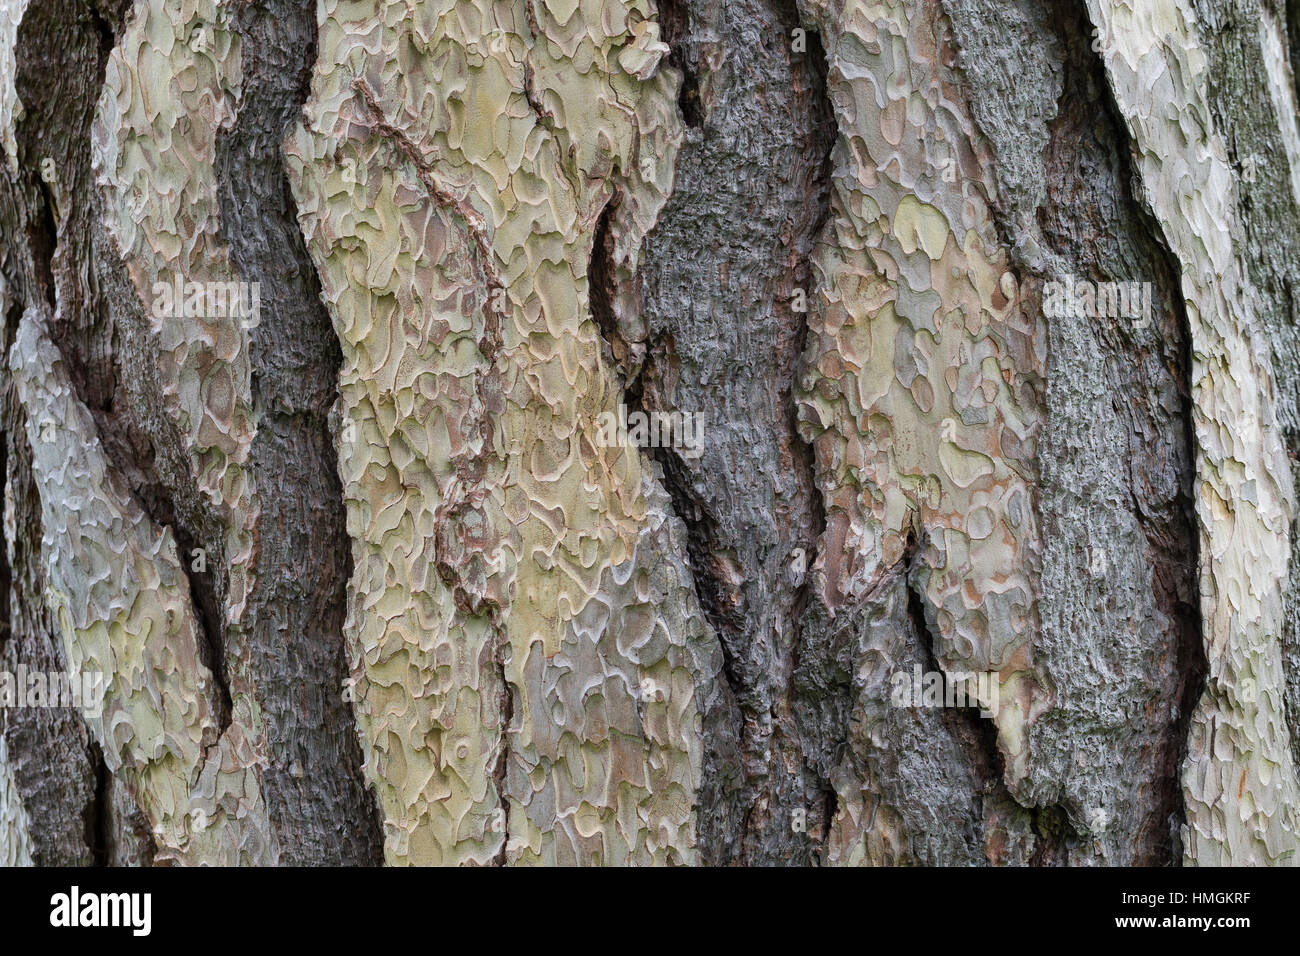 Schwarz-Kiefer, Schwarzkiefer, Kiefer, Rinde, Borke, Stamm, Pinus nigra, Pinus austriaca, Black Pine, bark, rind Stock Photo